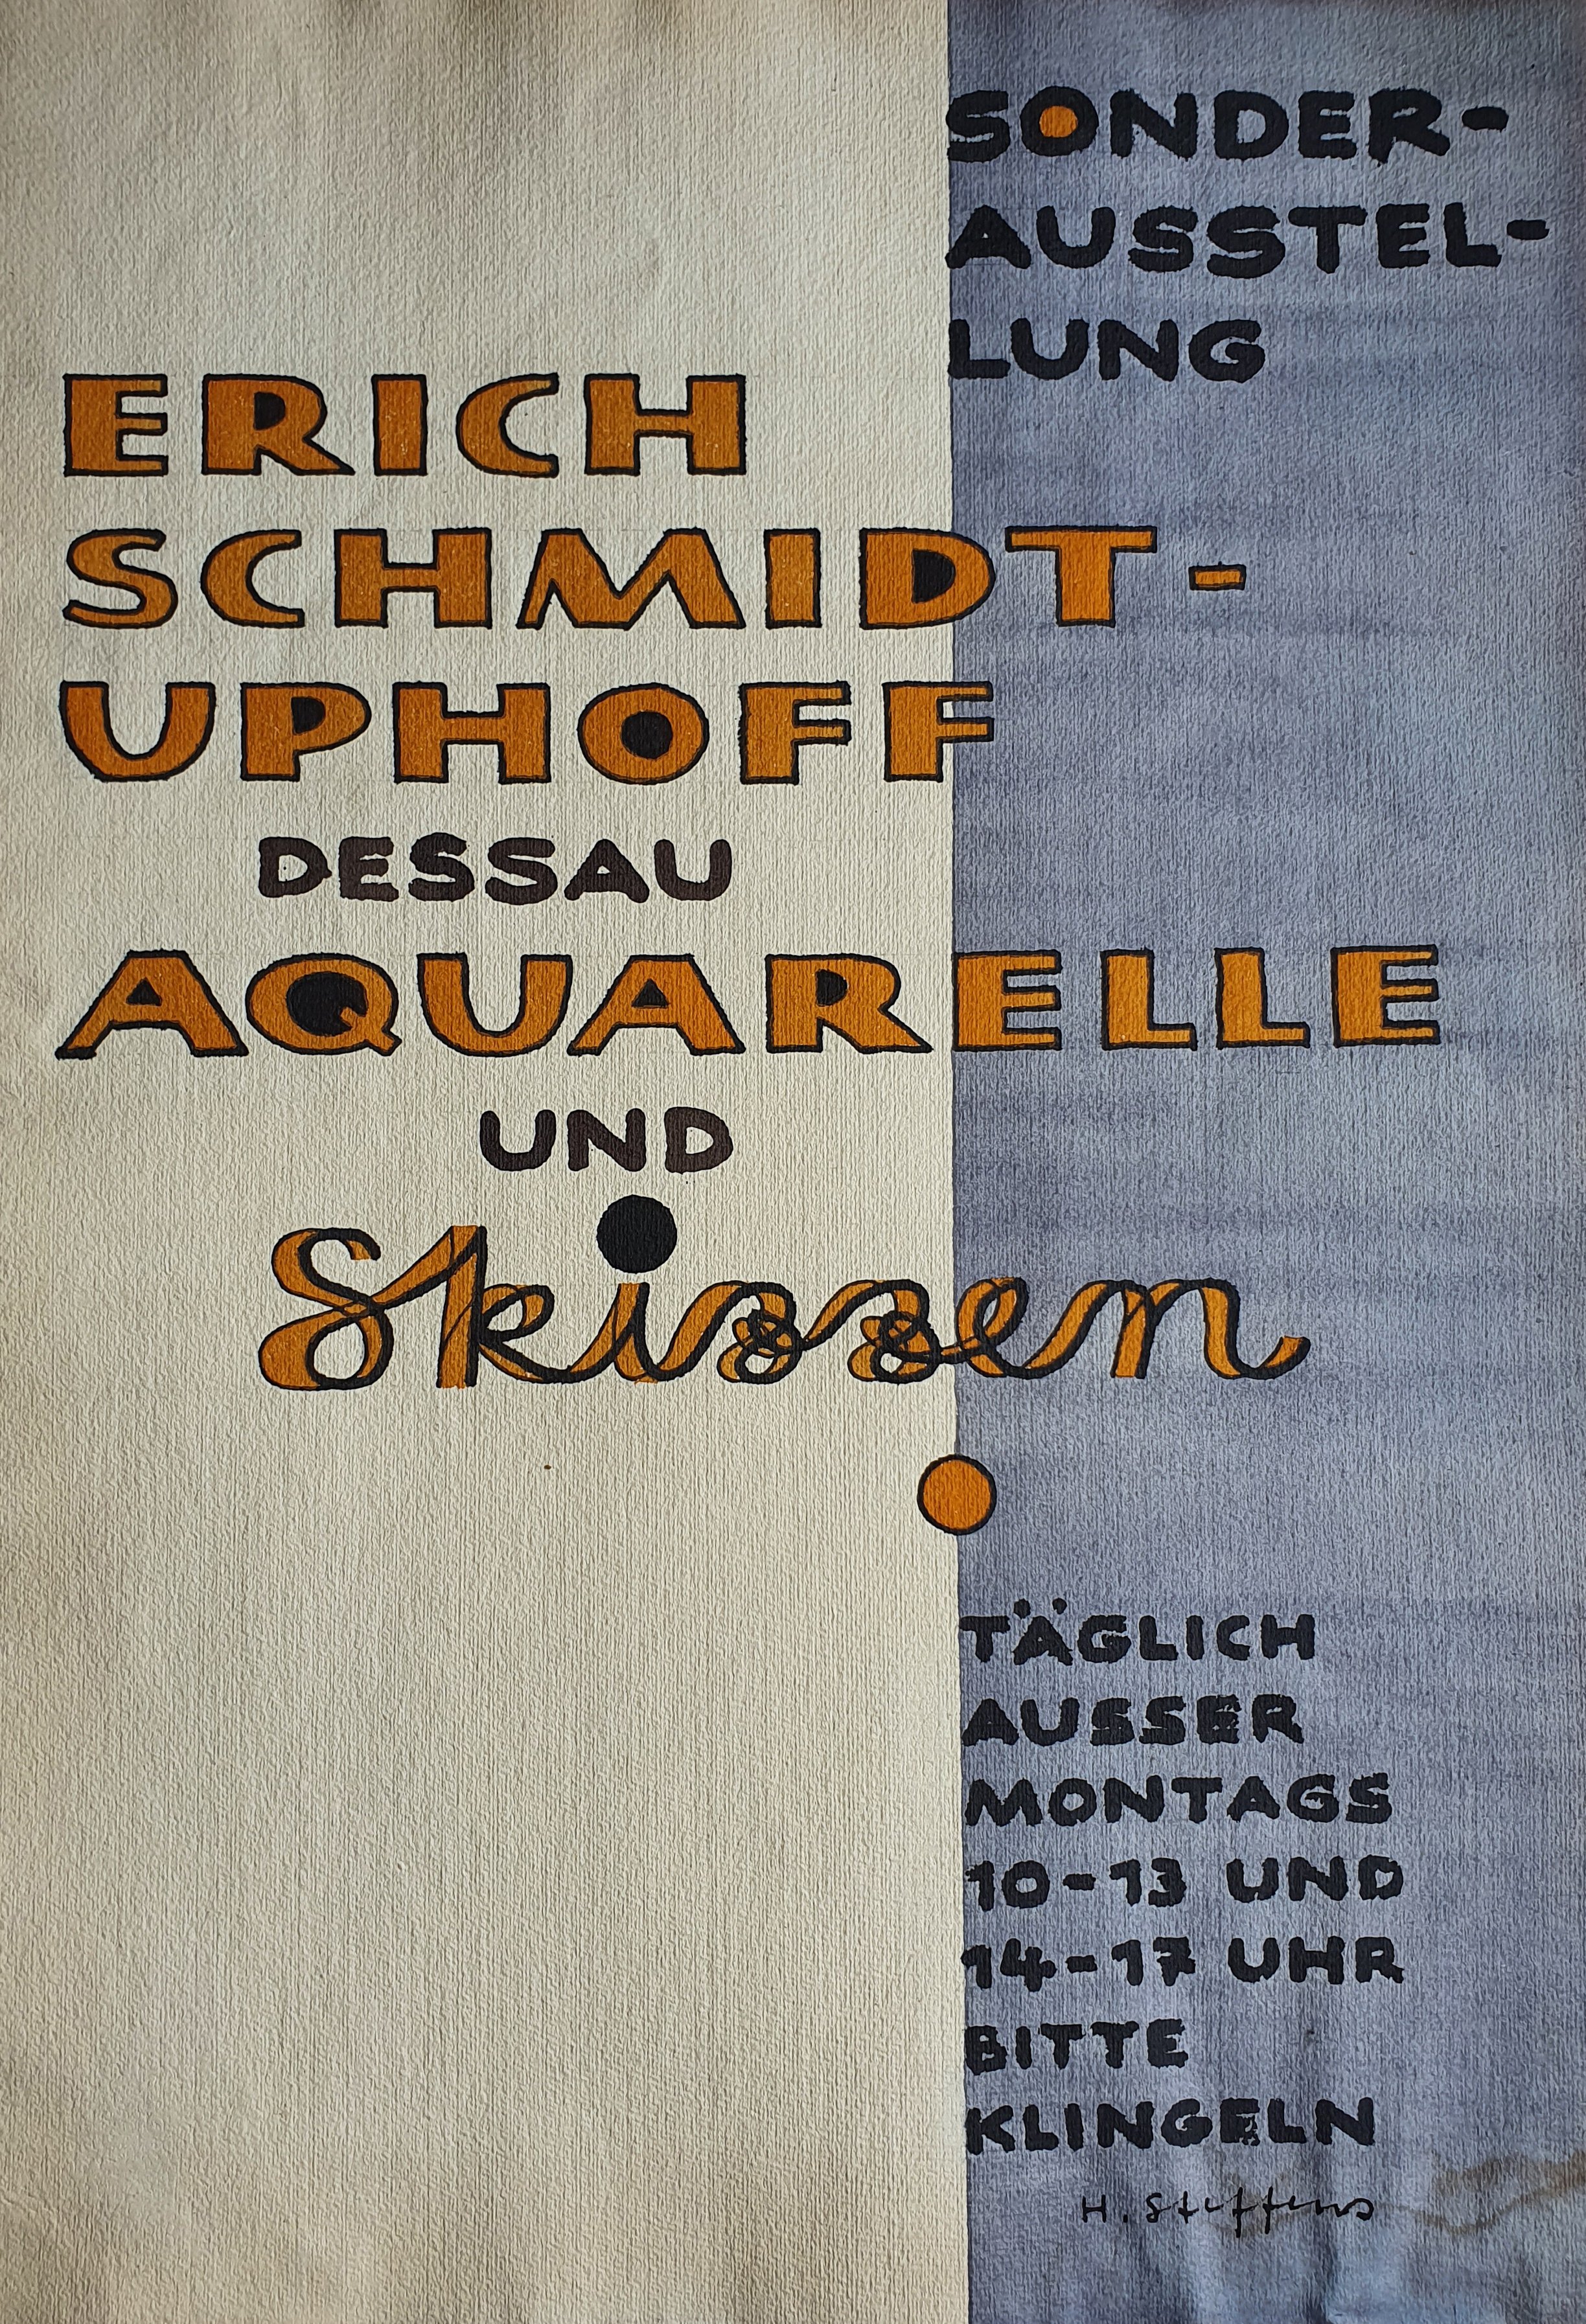 Sonderausstellung Erich Schmidt-Uphoff Dessau - Aquarelle und Skizzen (Museum Schloss Bernburg CC BY-NC-SA)